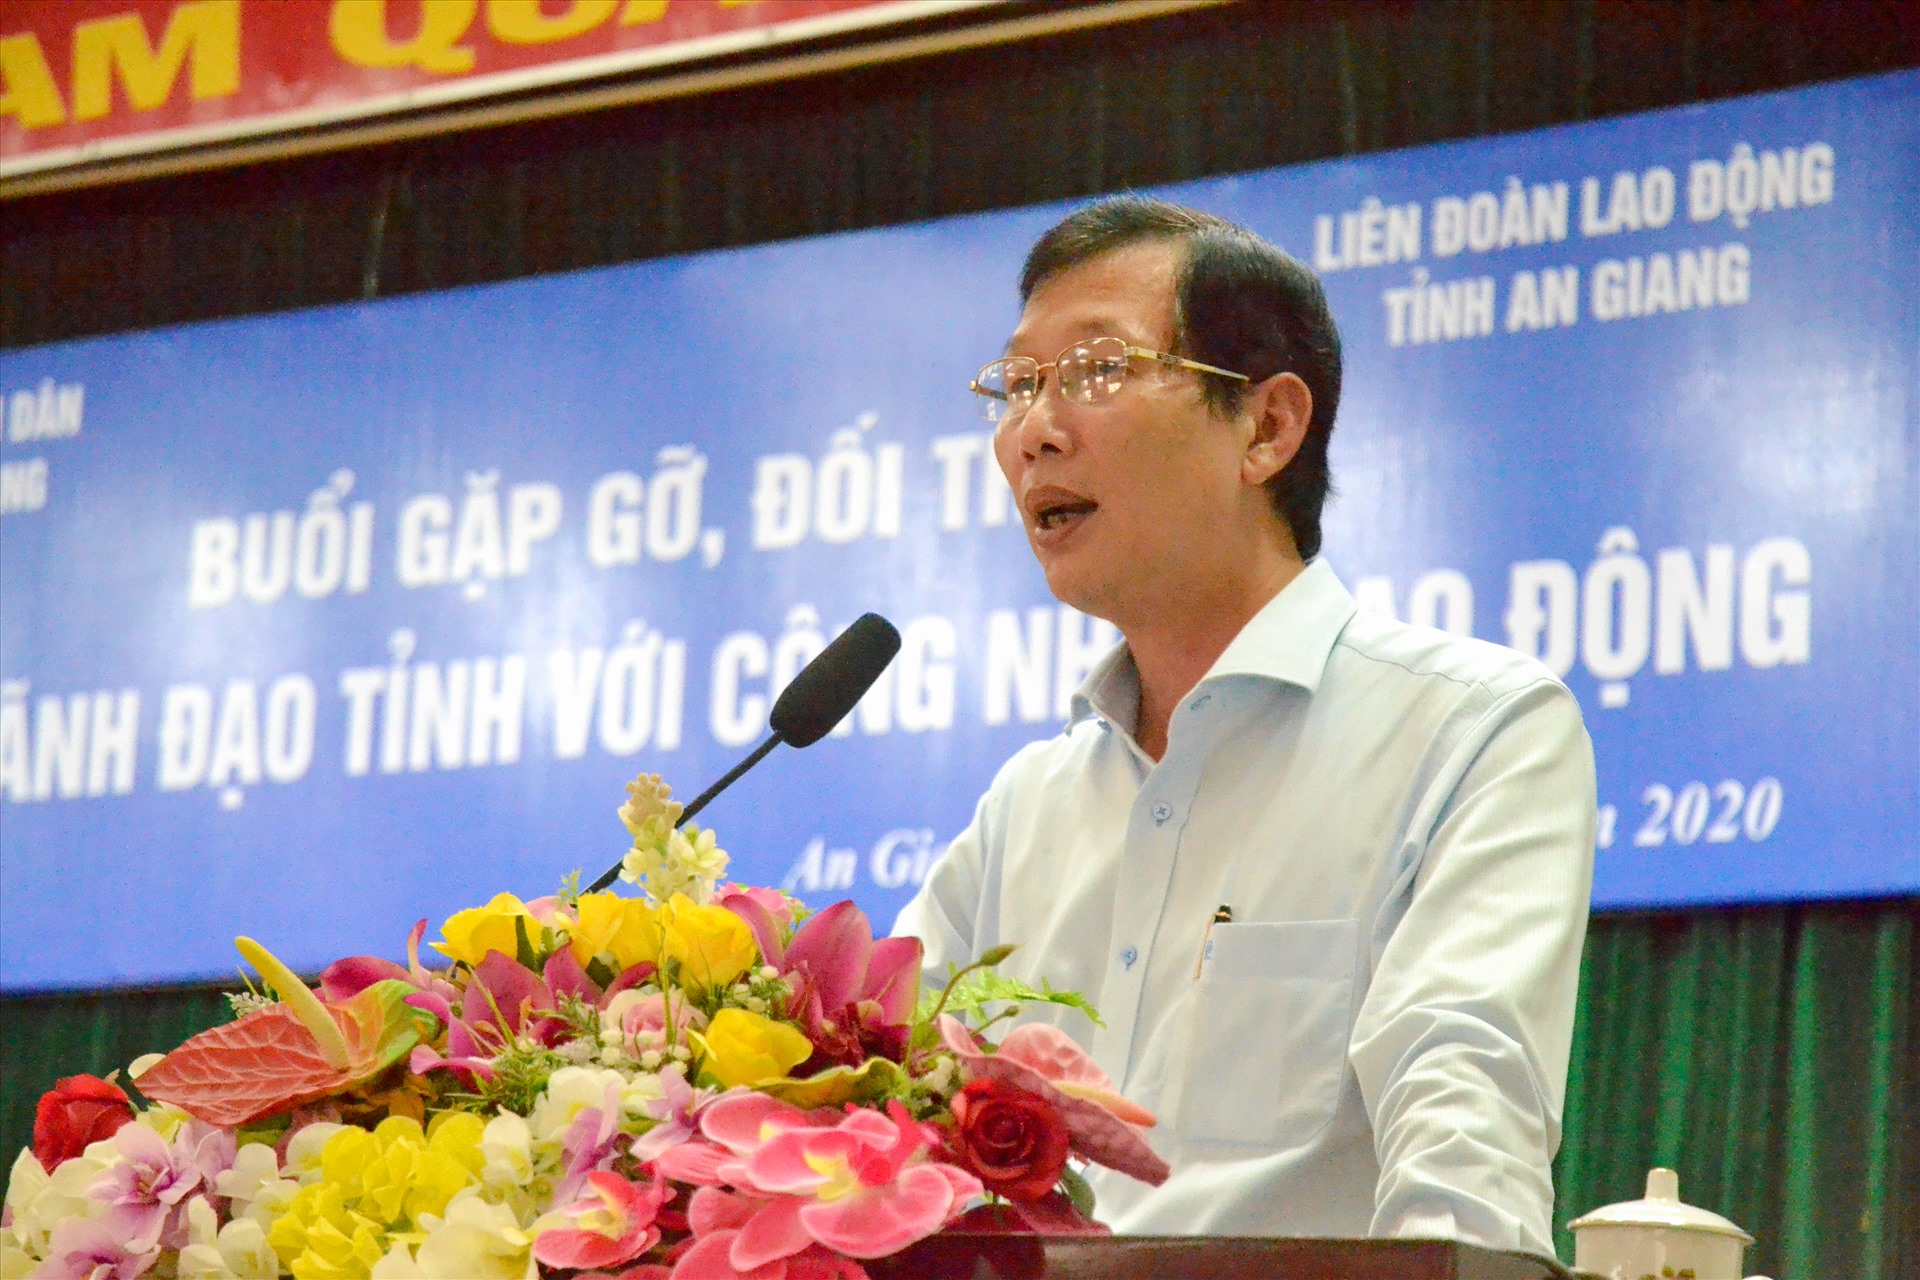 Phó Chủ tịch UBND tỉnh An Giang Lê Văn Phước phát biểu tại sự kiện. Ảnh: LT